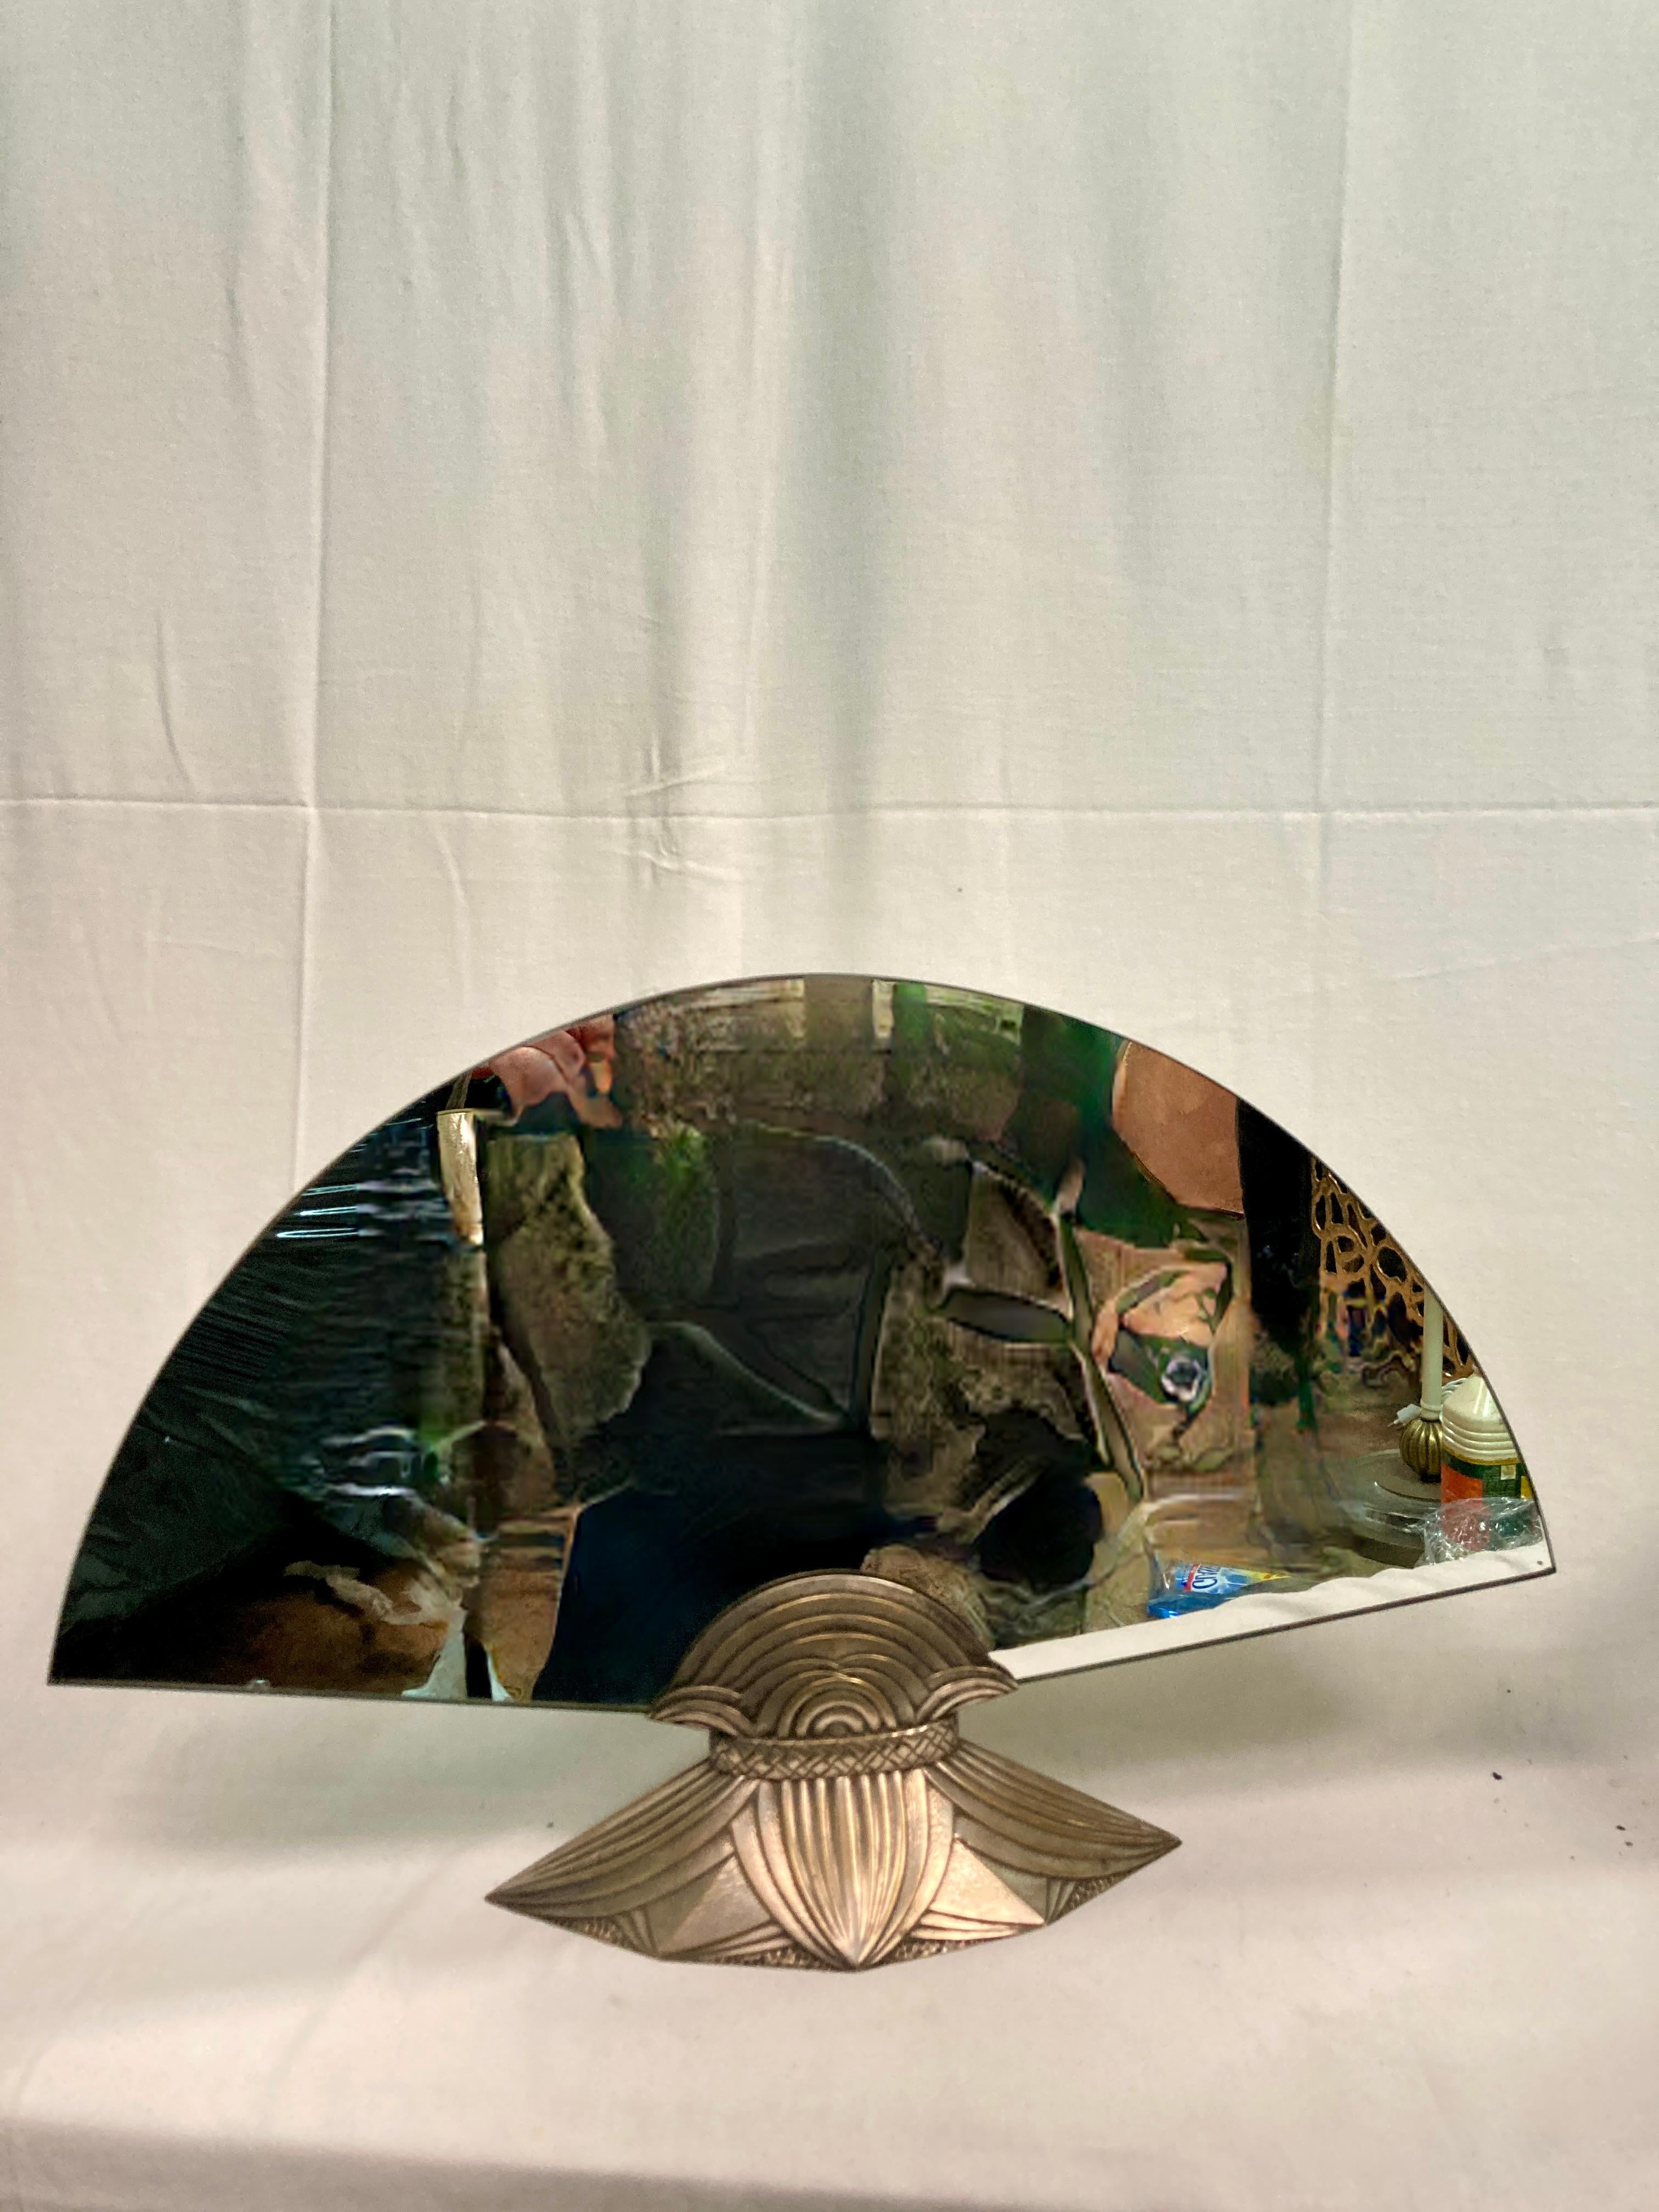 Rare miroir de table en bronze signé Albert Cheuret
Inspiration égyptienne avec feuilles de lotus stylisées
Circa 1925 
Documentée et exposée dans les musées 
Miroir double face
Remplacement des rétroviseurs